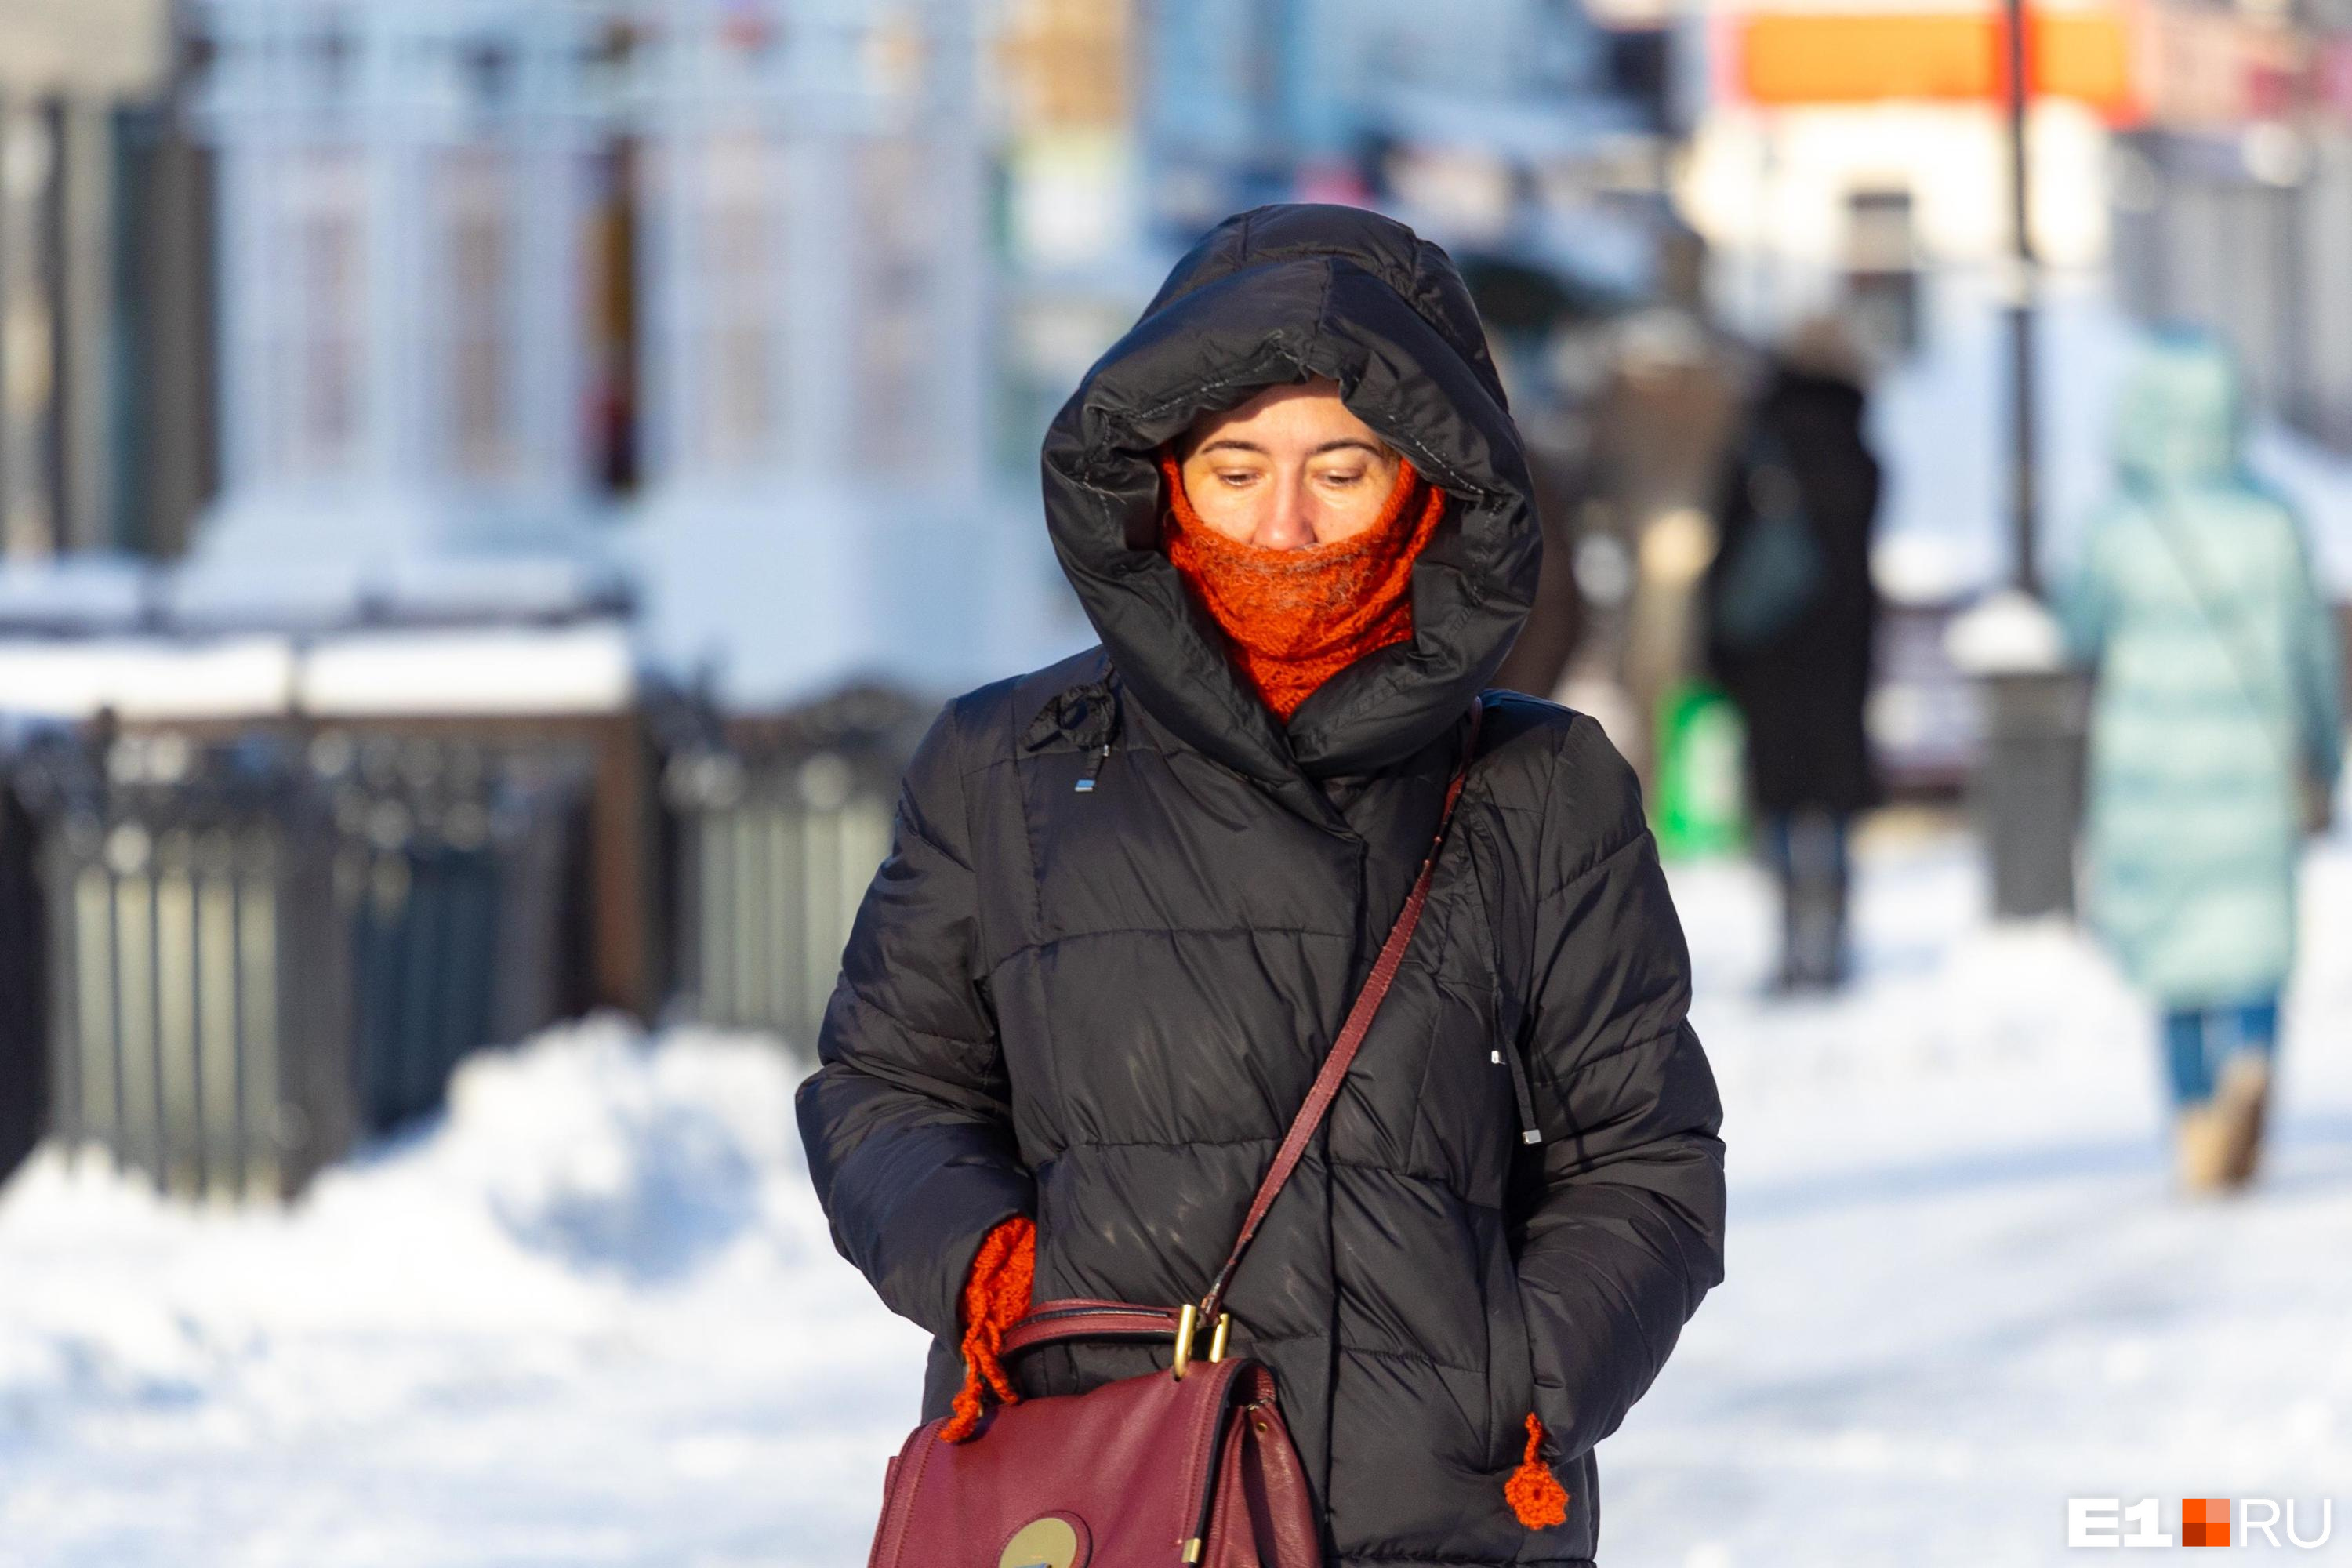 Убирать пуховики рано! В конце зимы в Екатеринбурге резко похолодает